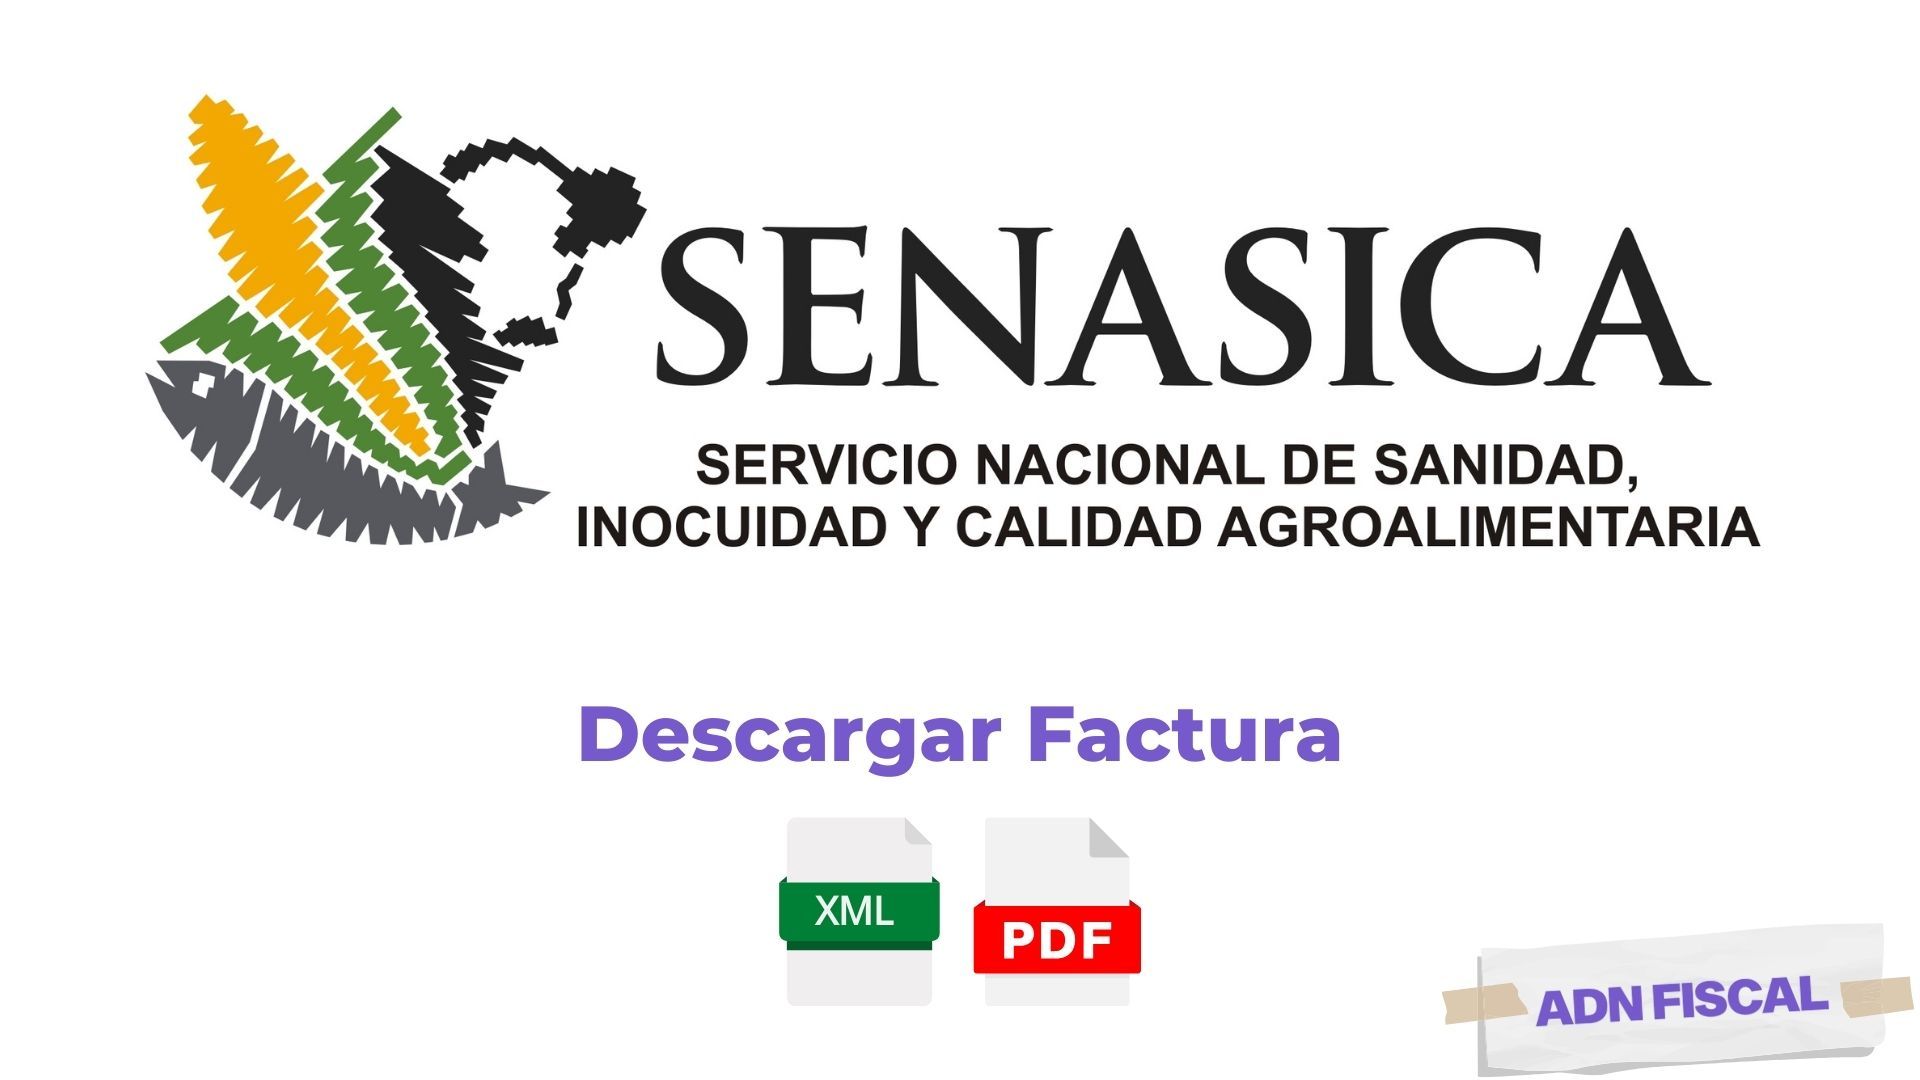 Facturacion Senasica Tramites y Servicios ADN Fiscal